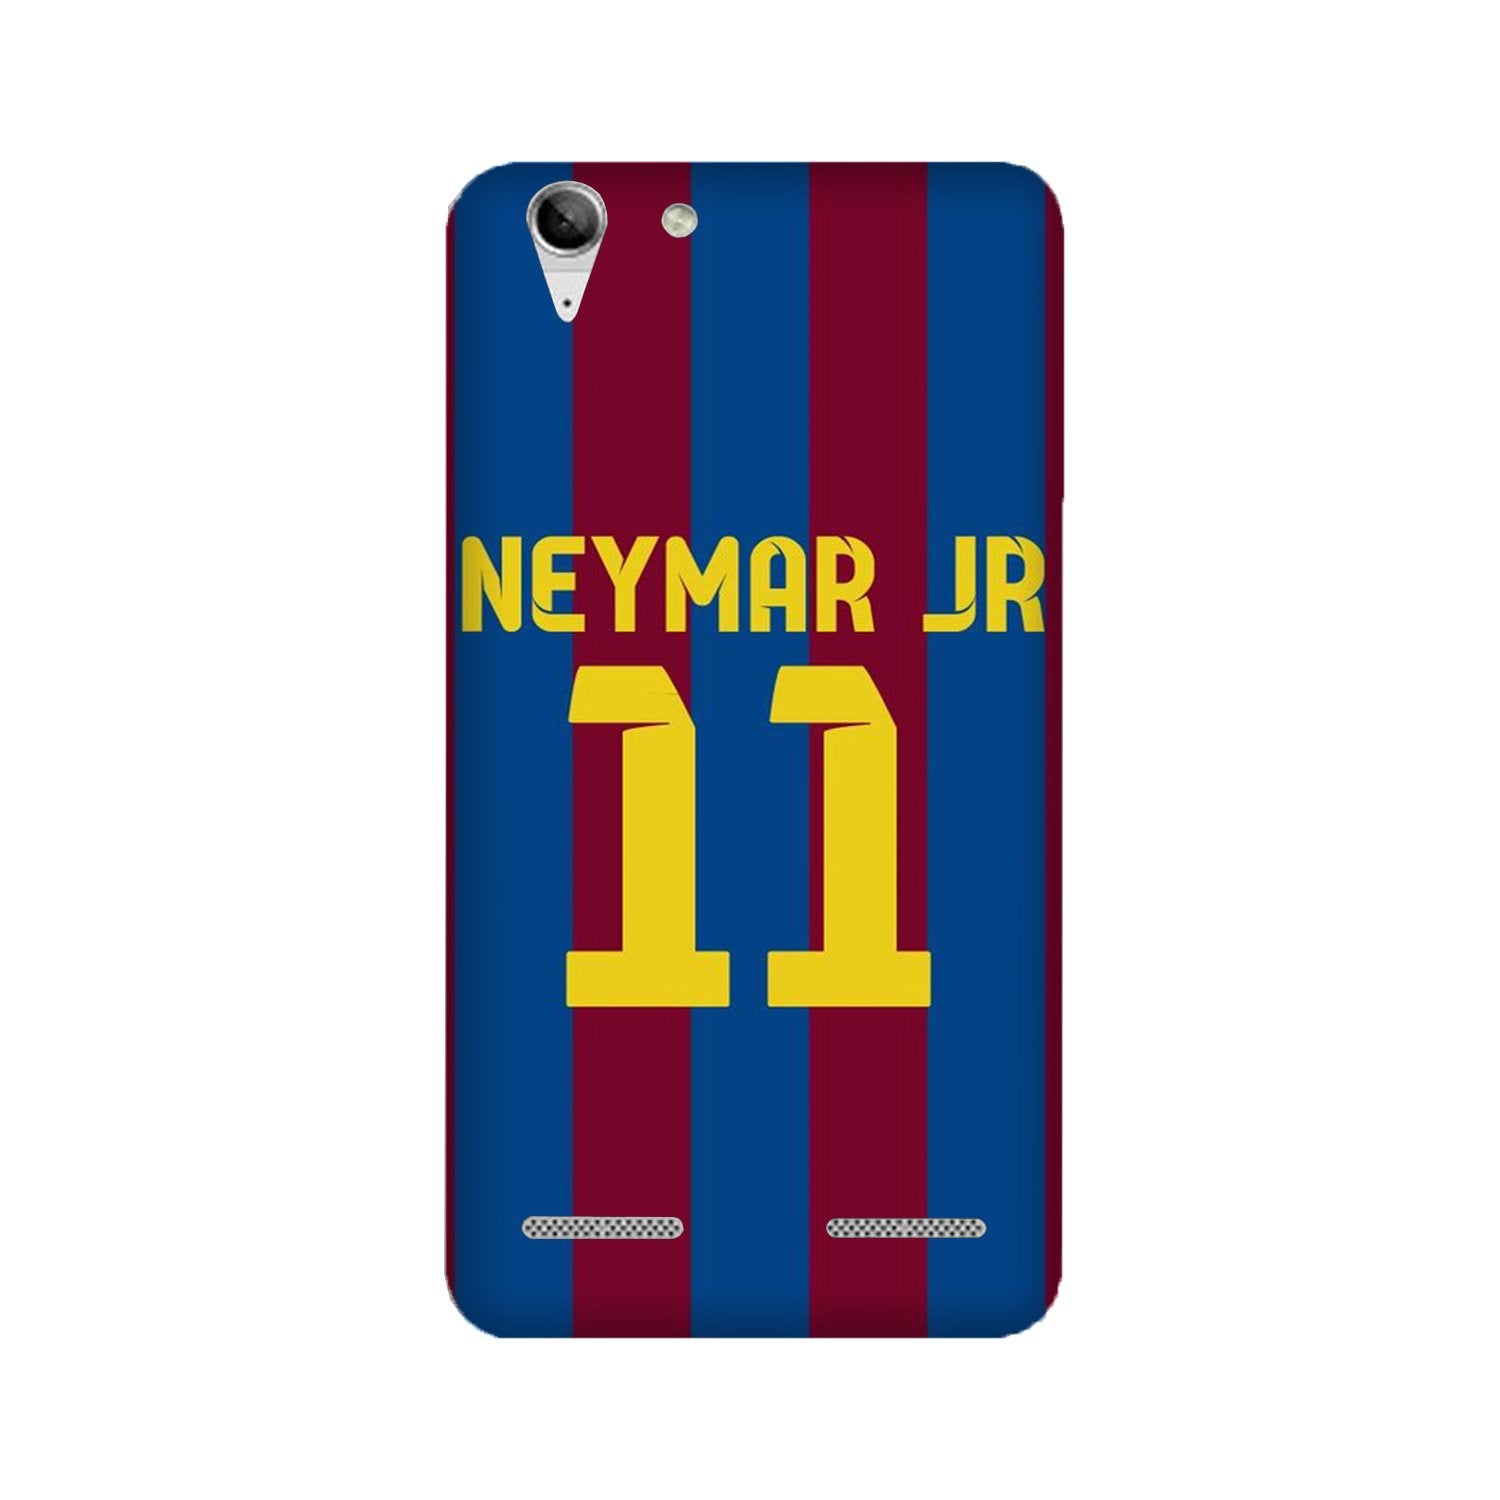 Neymar Jr Case for Lenovo K5 / K5 Plus(Design - 162)